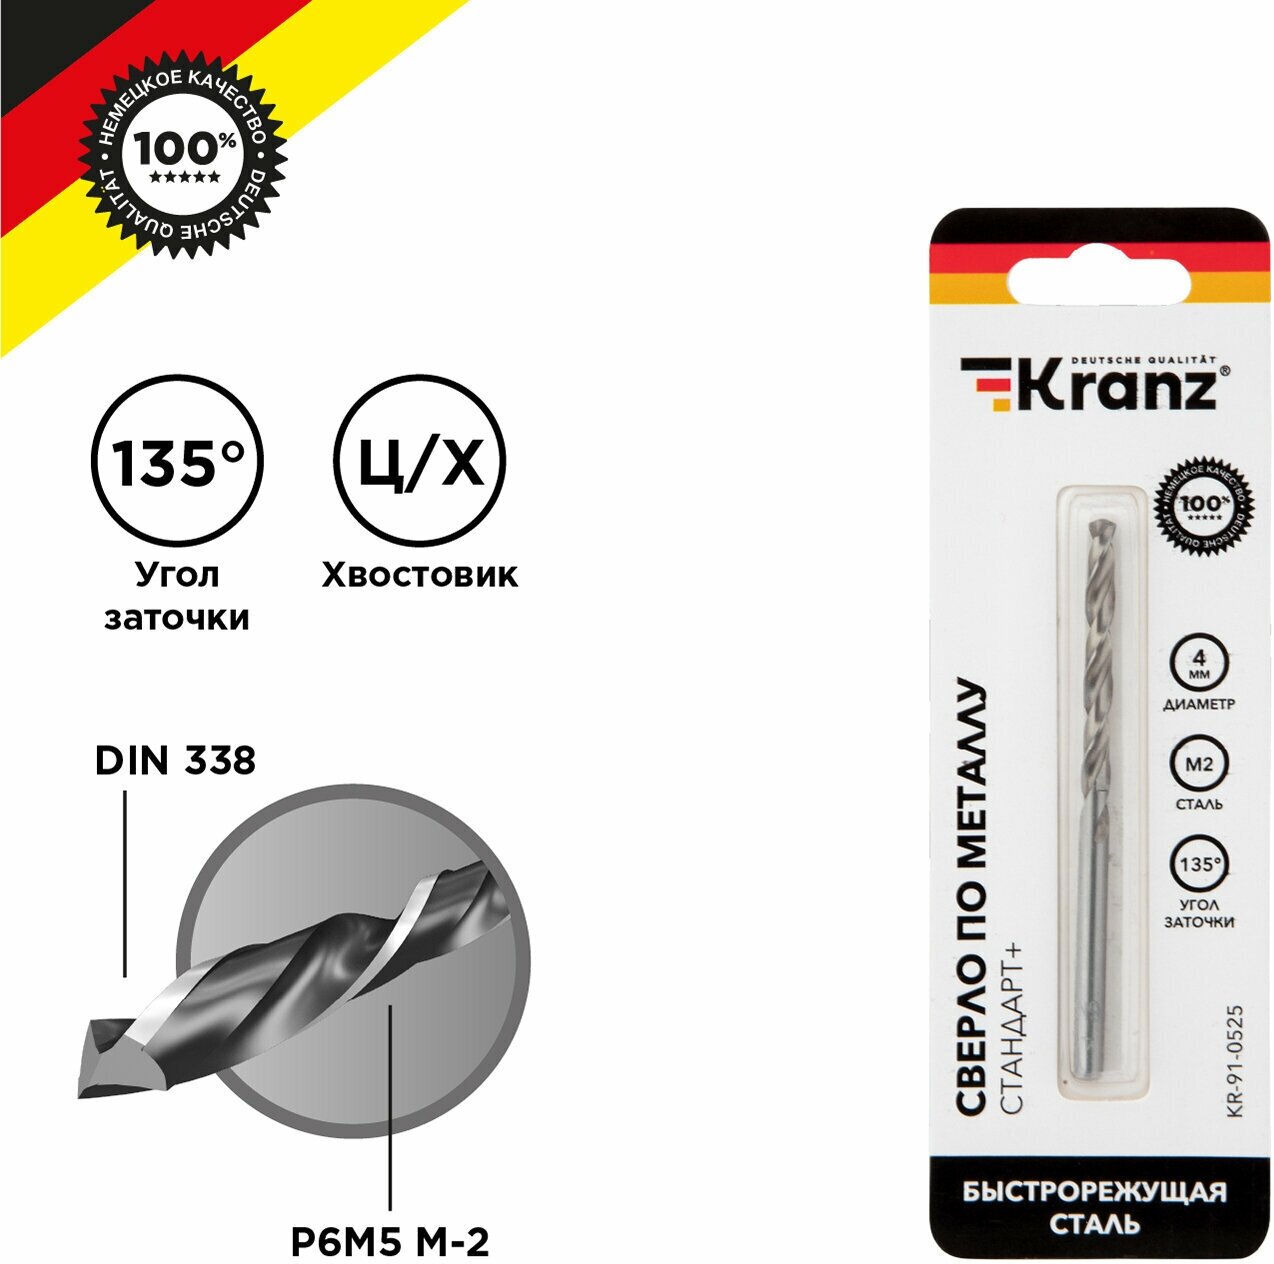 Сверло по металлу KRANZ 4 мм Стандарт+ из быстрорежущей стали P6M5 M-2 в упаковке 1 шт стандарт DIN 338